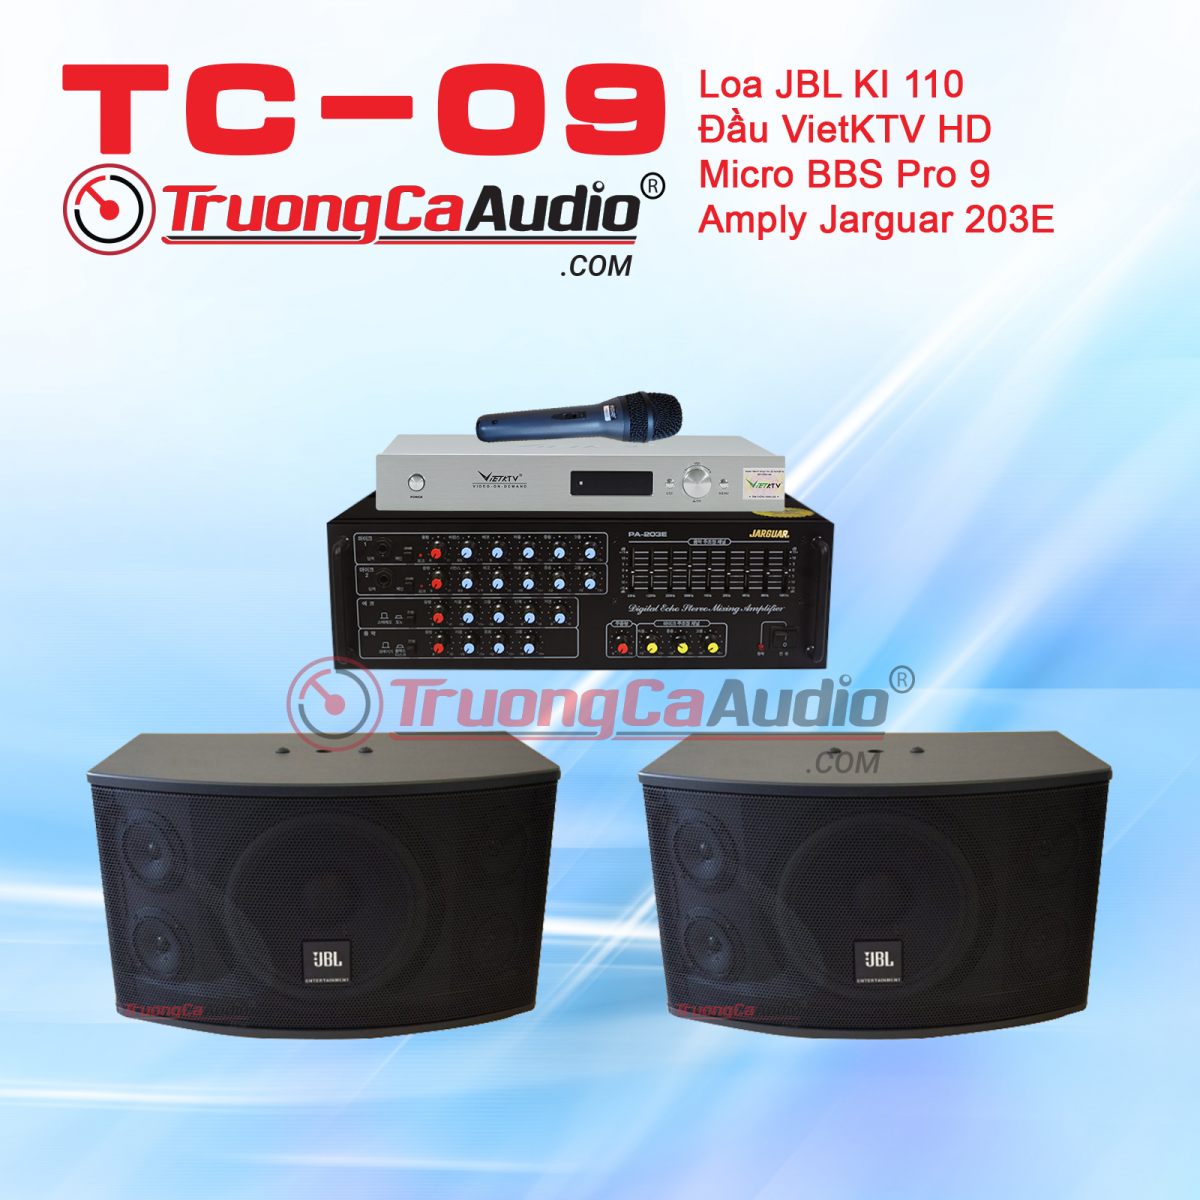 Dàn karaoke gia đình TC - 09 gồm những thiết bị chất lượng cao, dàn karaoke gia đình TC - 09 có tại trường ca audio